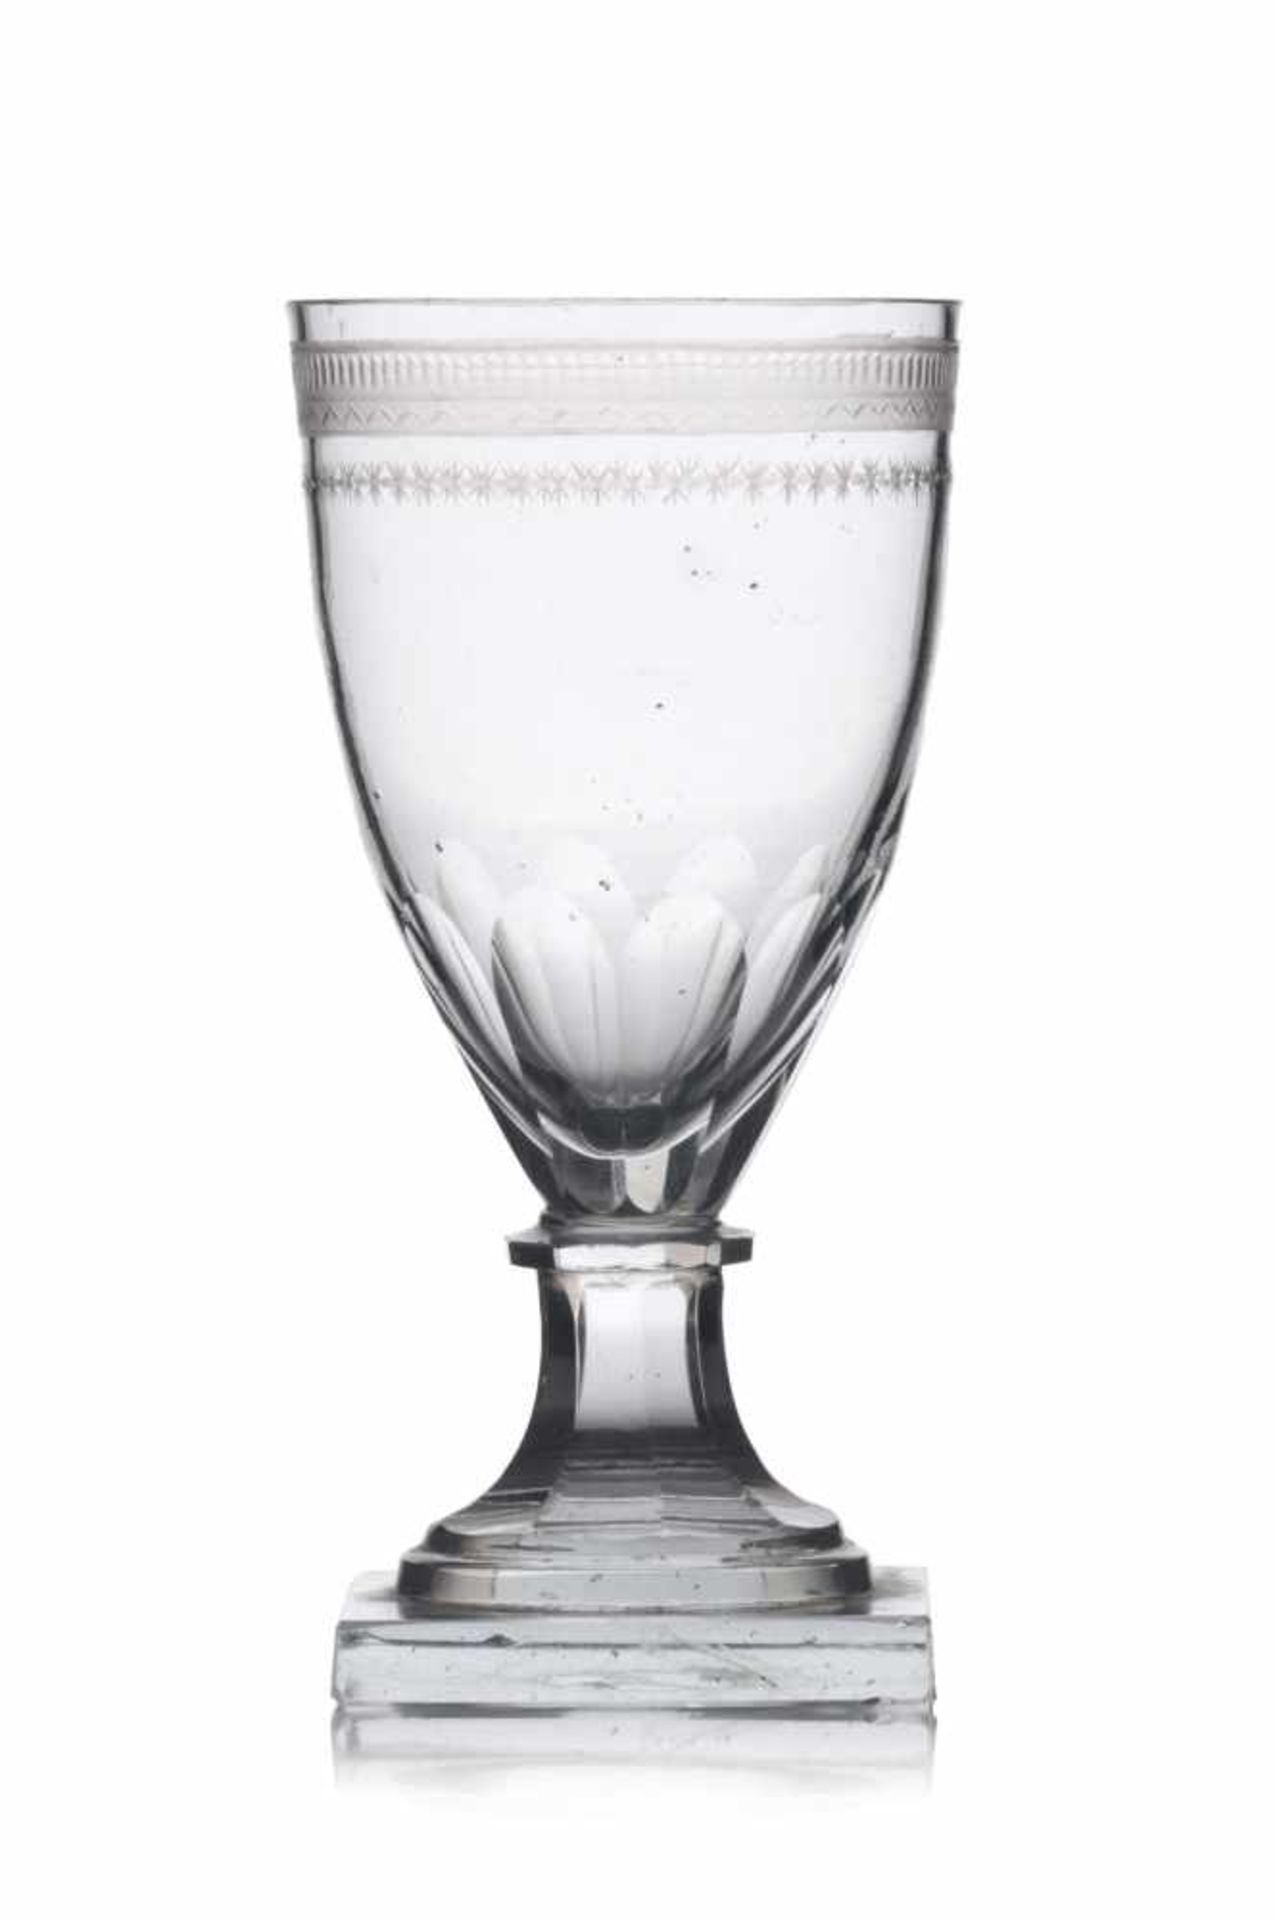 Kelchglas. Frühes/Mitte 19. Jh. Farbloses, schlieriges Glas mit Einschlüssen. Jeweils schlanker,